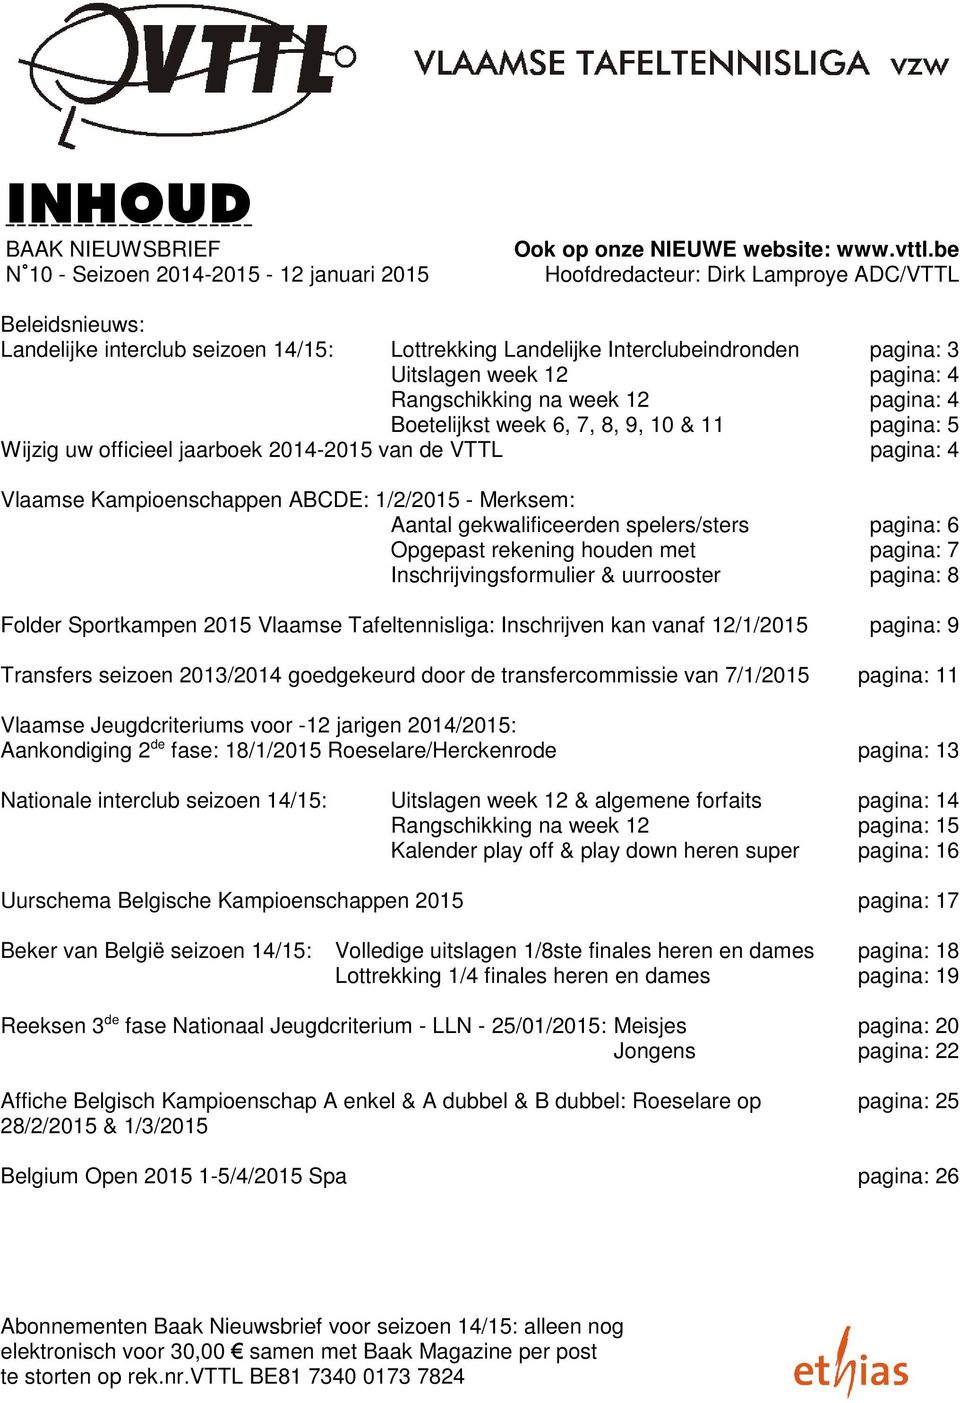 week 12 pagina: 4 Rangschikking na week 12 pagina: 4 Boetelijkst week 6, 7, 8, 9, 10 & 11 pagina: 5 Wijzig uw officieel jaarboek 2014-2015 van de VTTL pagina: 4 Vlaamse Kampioenschappen ABCDE: